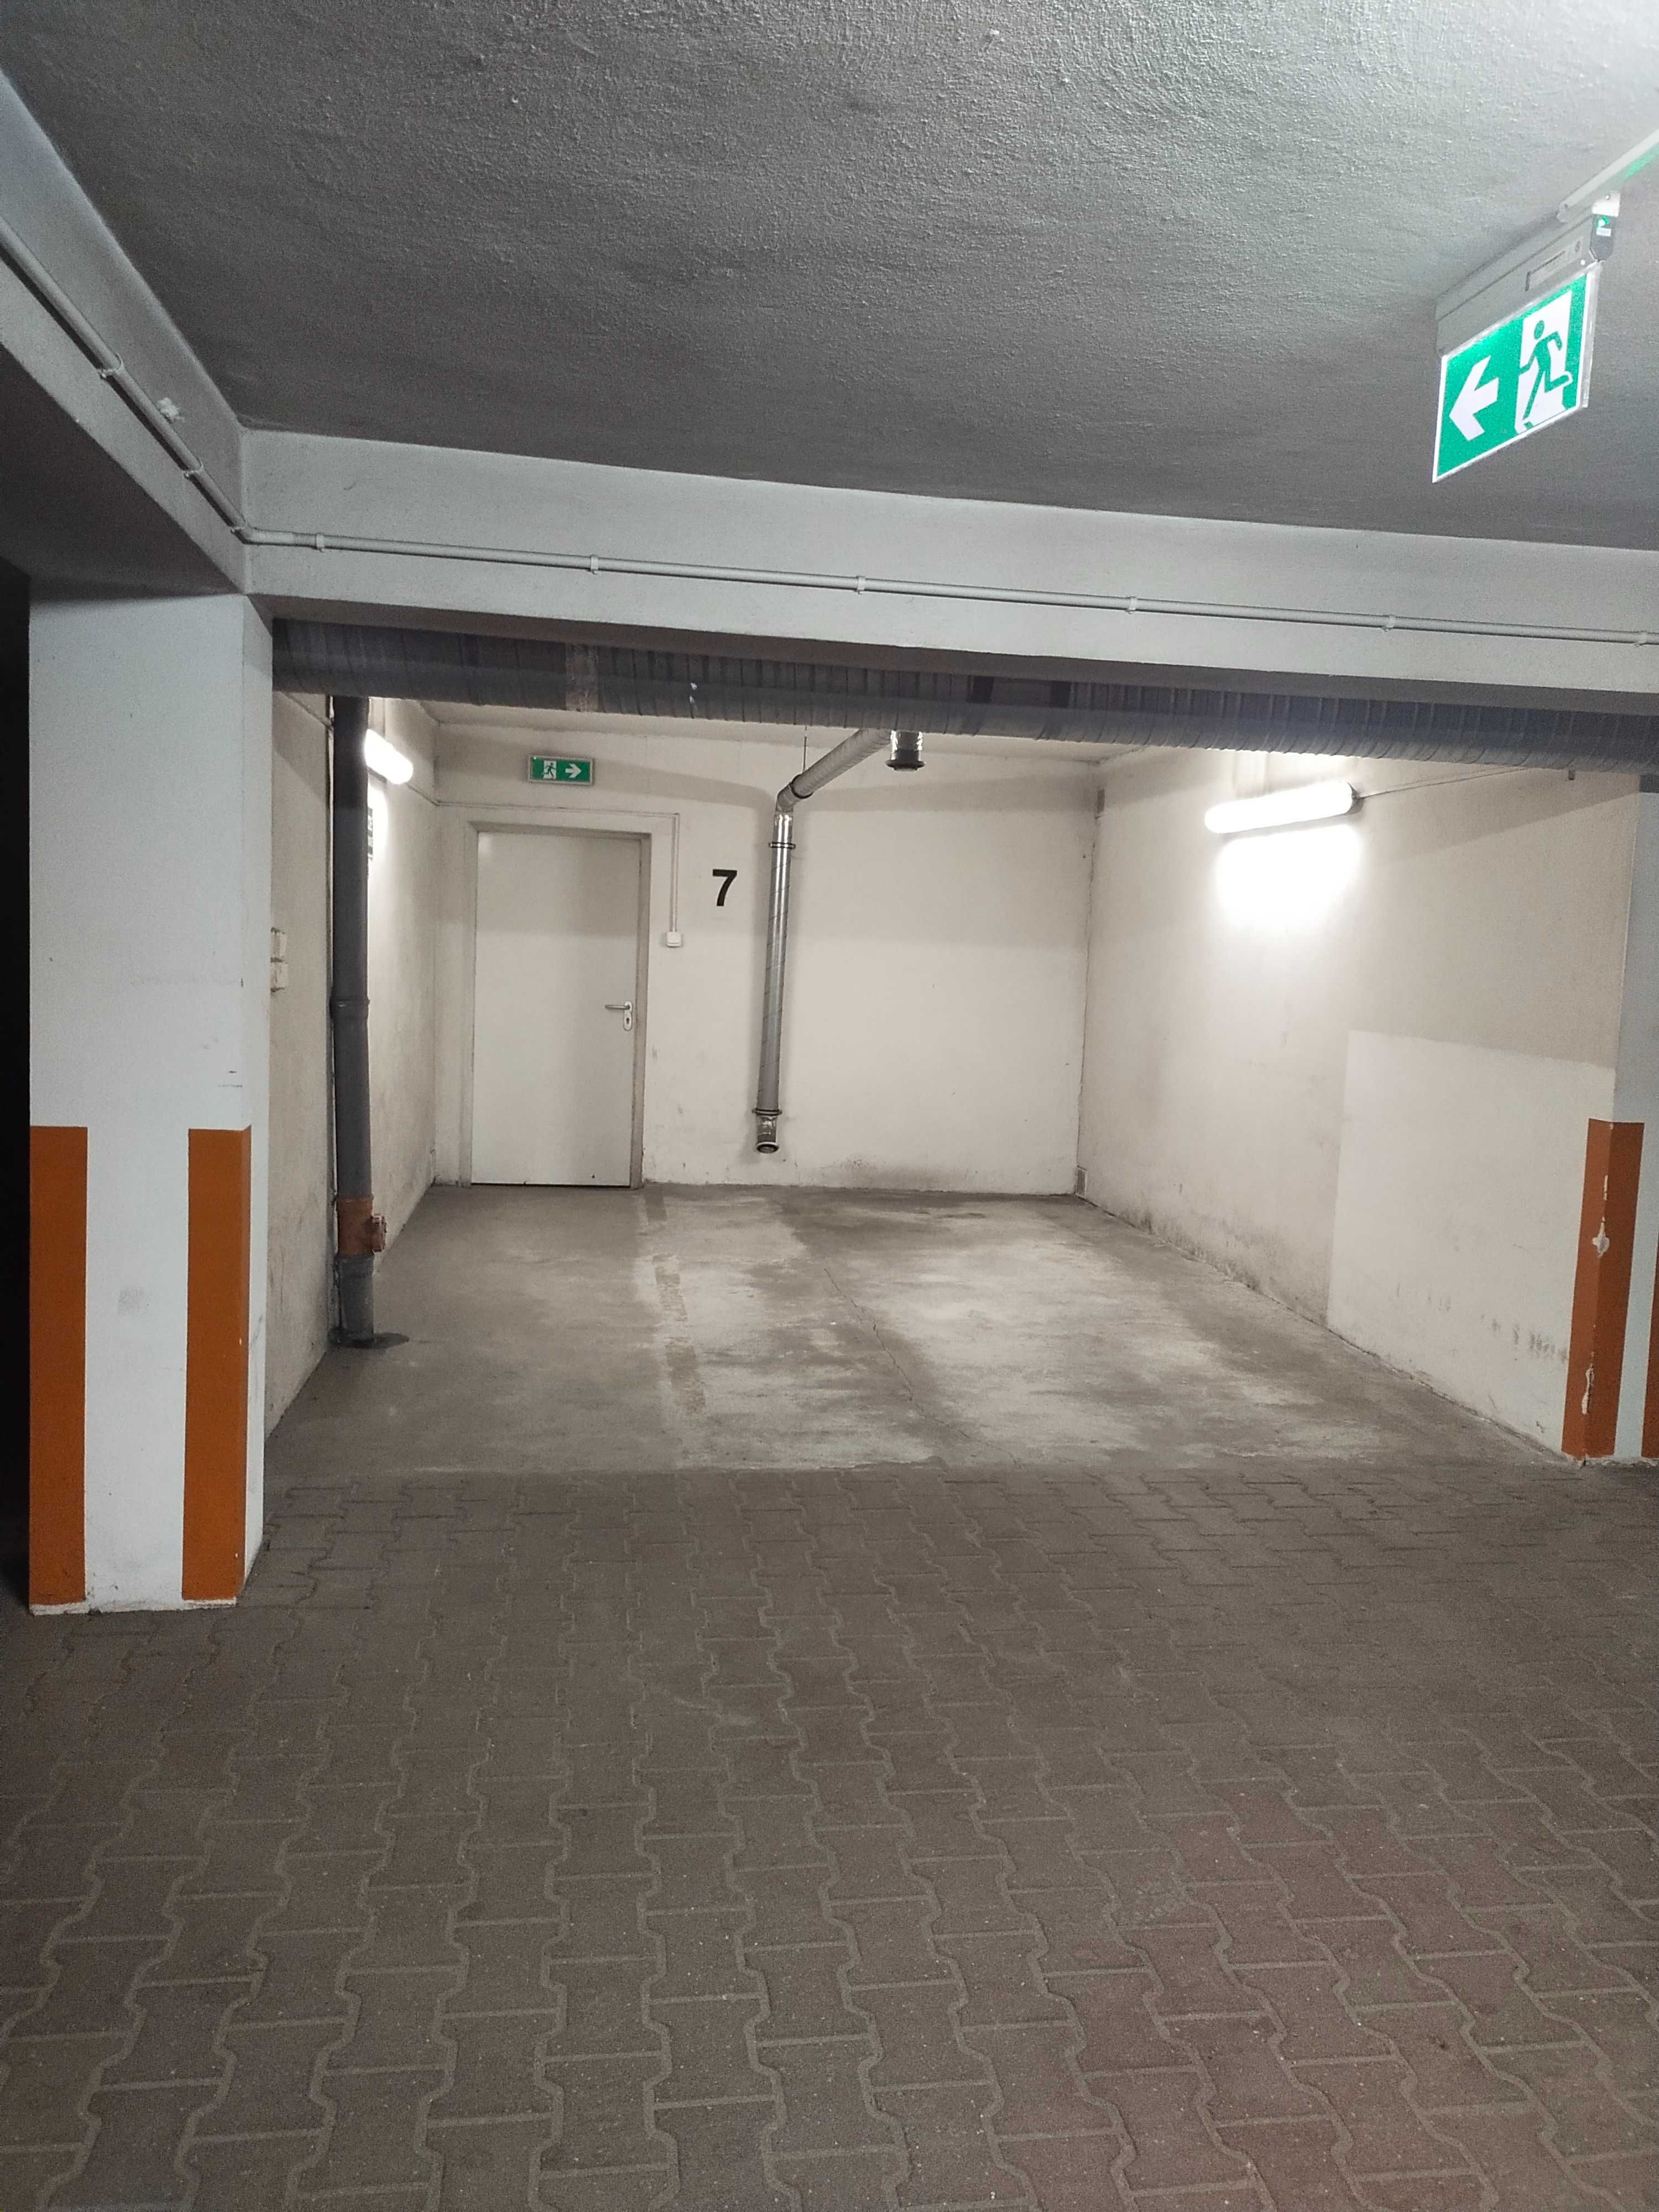 Garaż podziemny miejsce parkingowe, miejsce postojowe Kraków Żabiniec